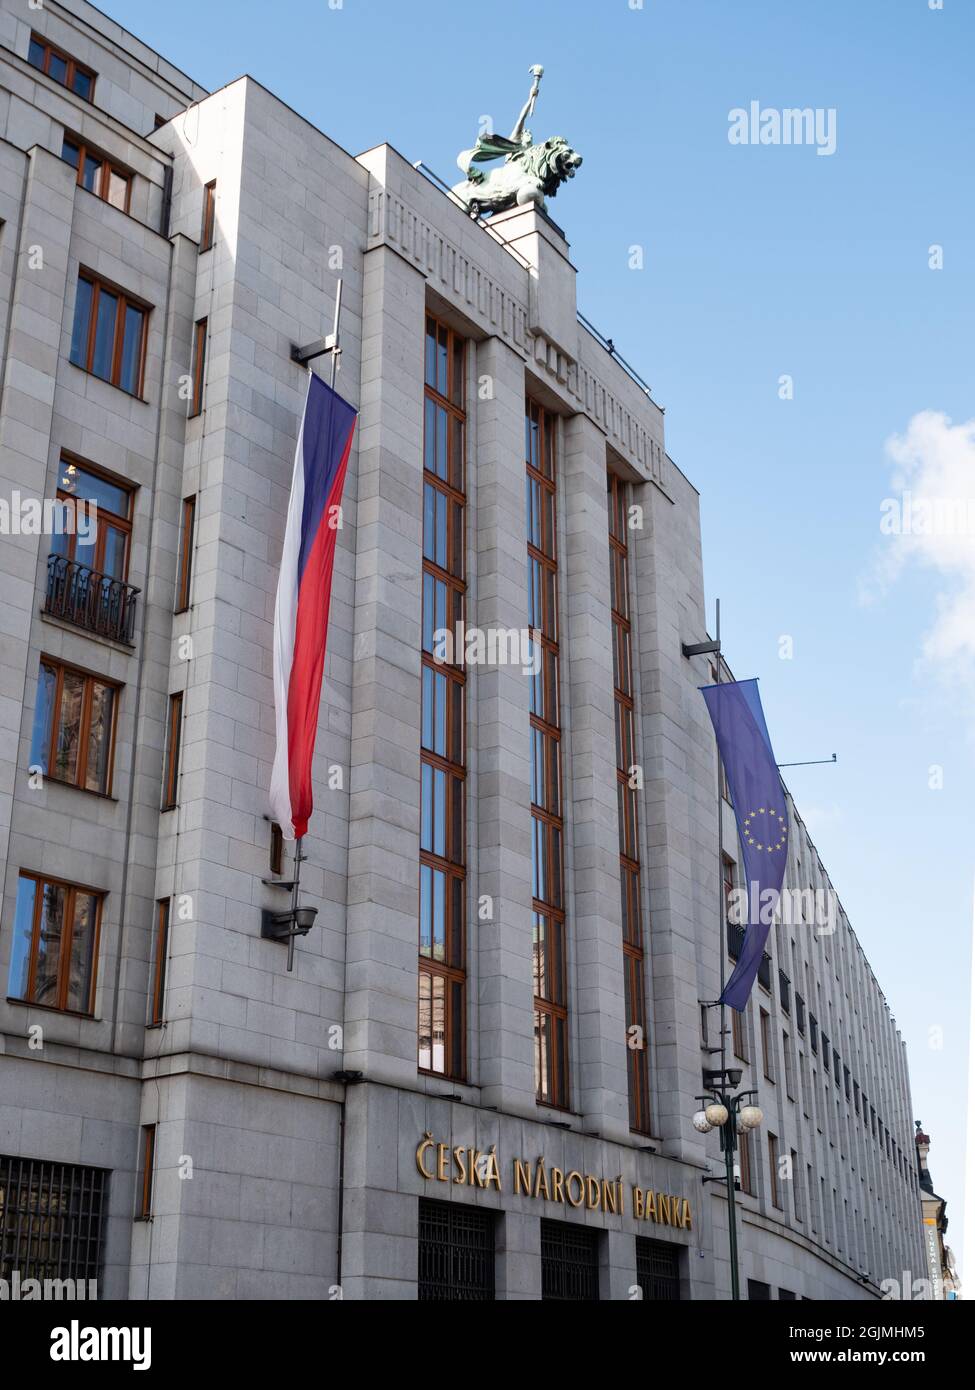 Praga, Repubblica Ceca - 3 luglio 2021: Banca Nazionale Ceca o Ceska Narodni Banka esterno. Foto Stock